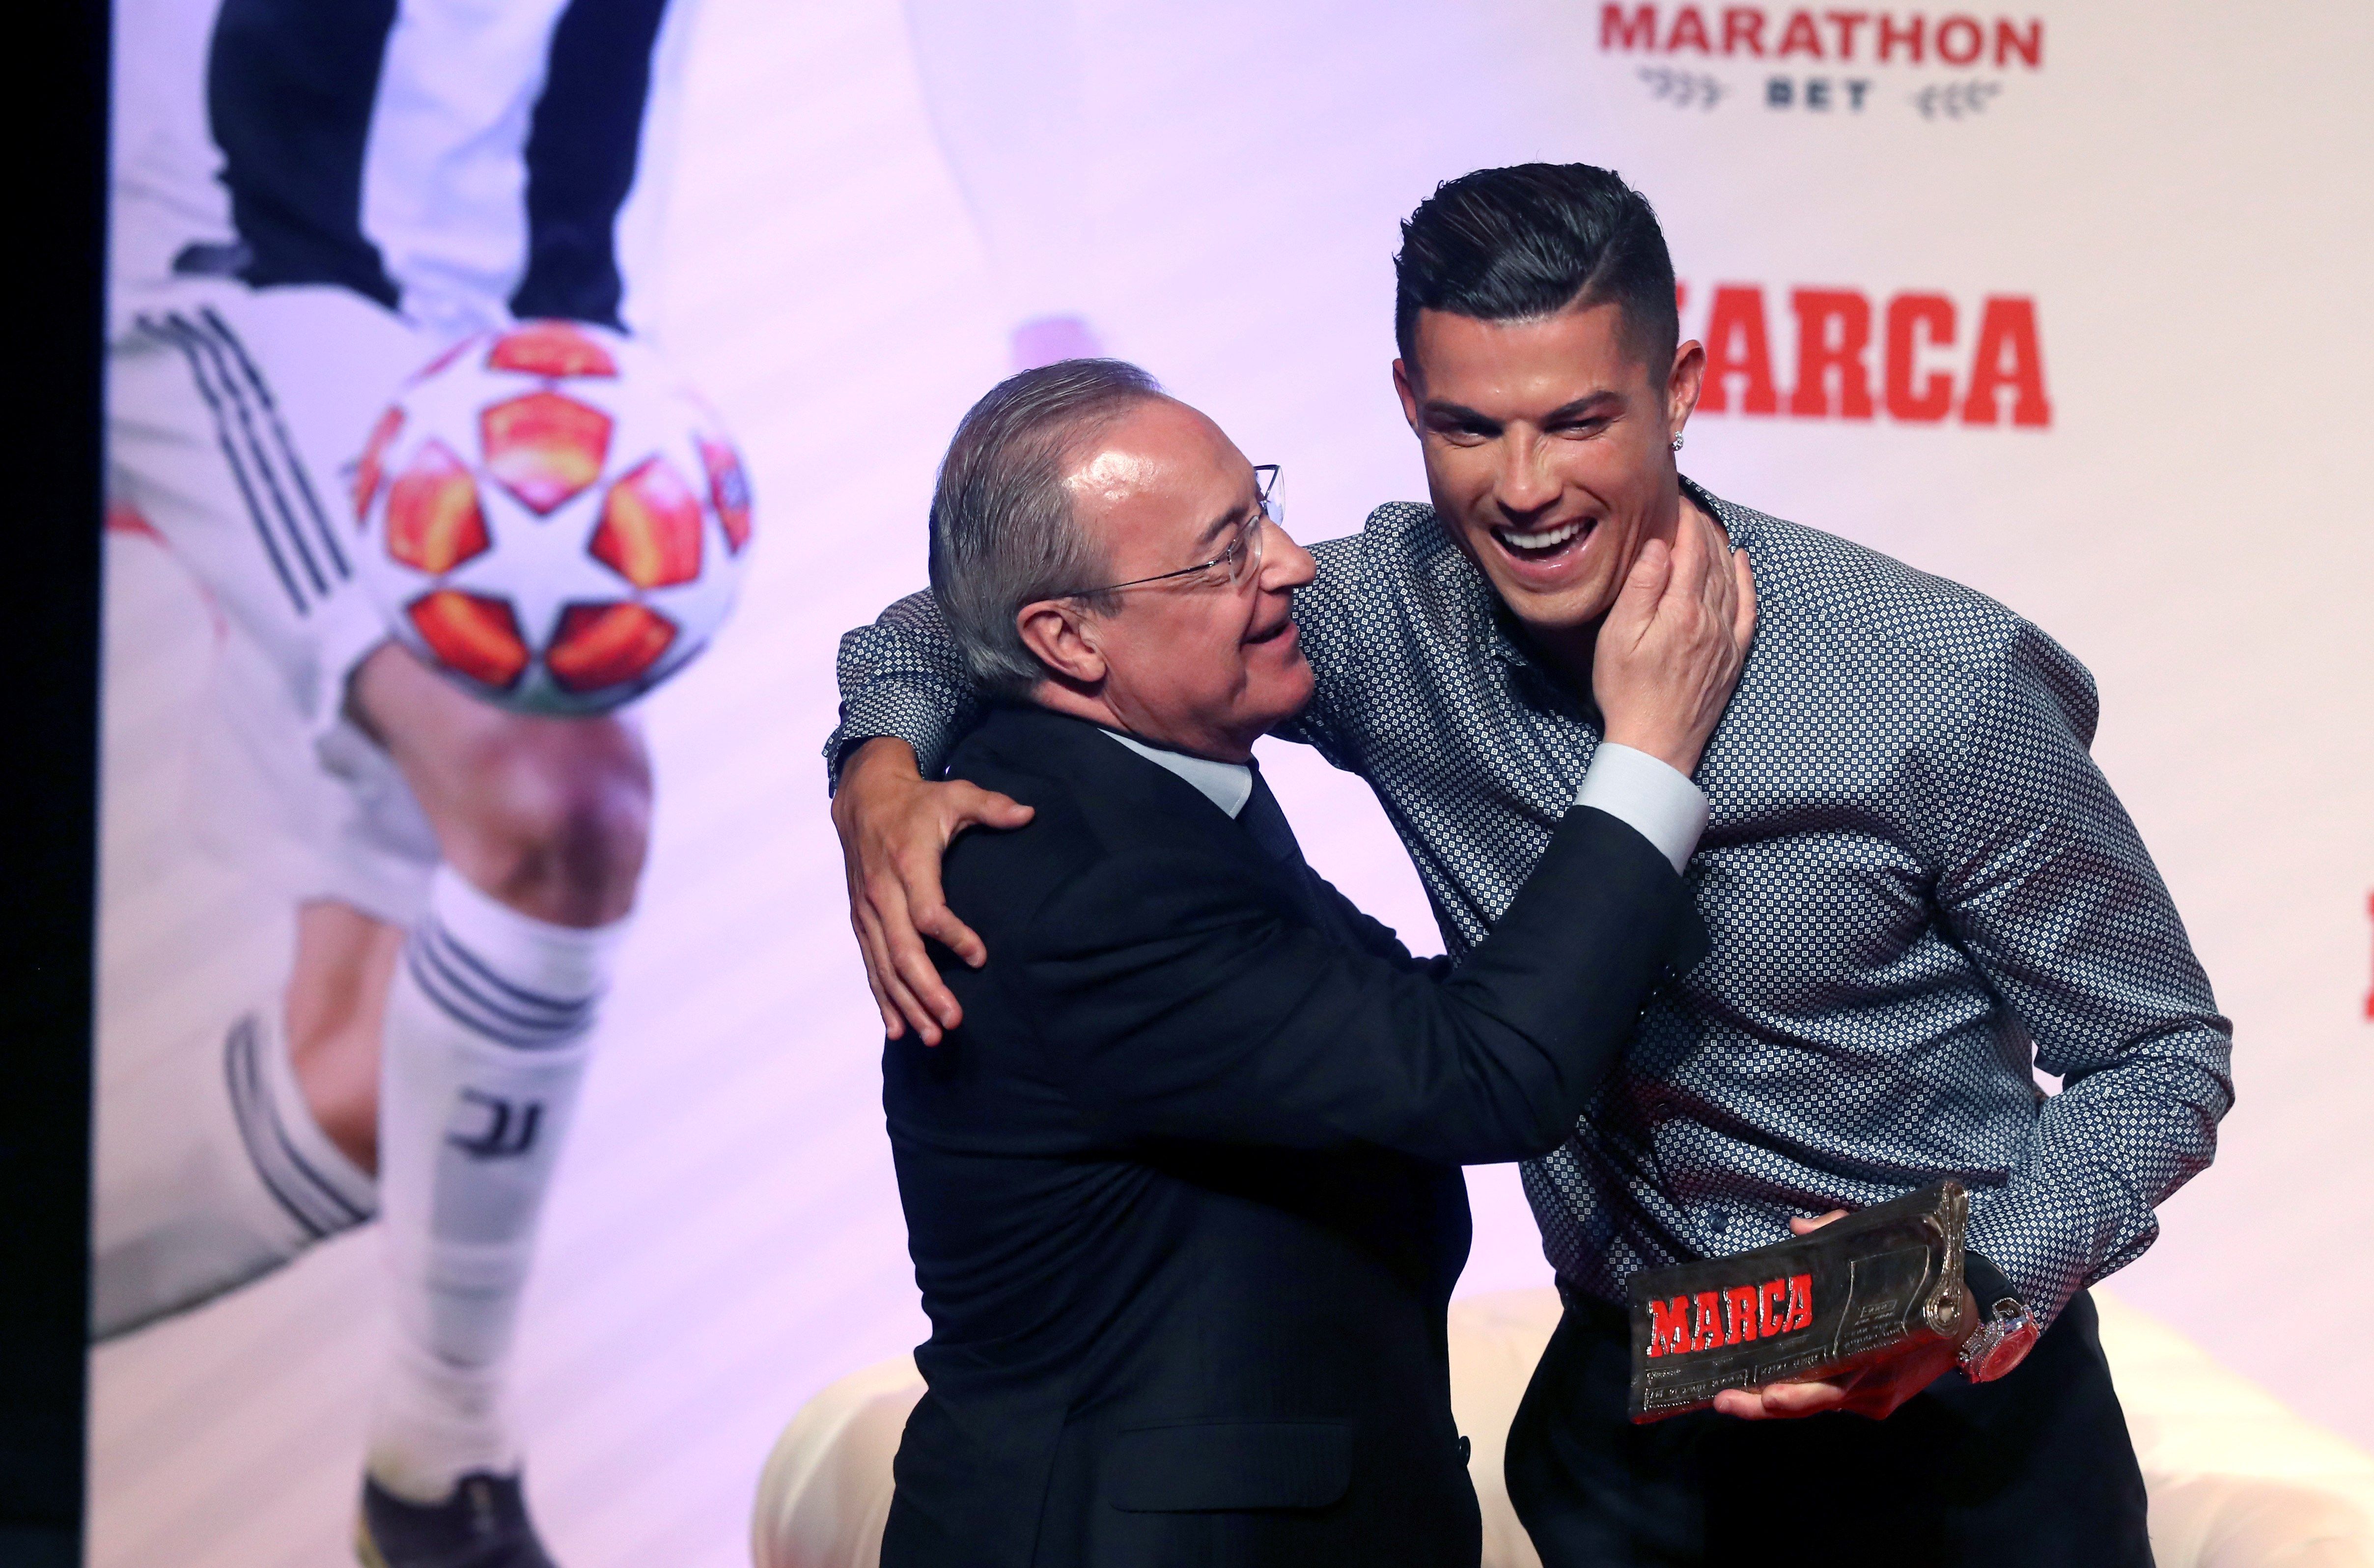 Cristiano Ronaldo (d), actual futbolista de la Juventus FC, junto al presidente del Real Madrid, Florentino Pérez, durante la gala en la que el futbolista ha recibido el Marca Leyenda,. (Foto Prensa Libre: EFE)